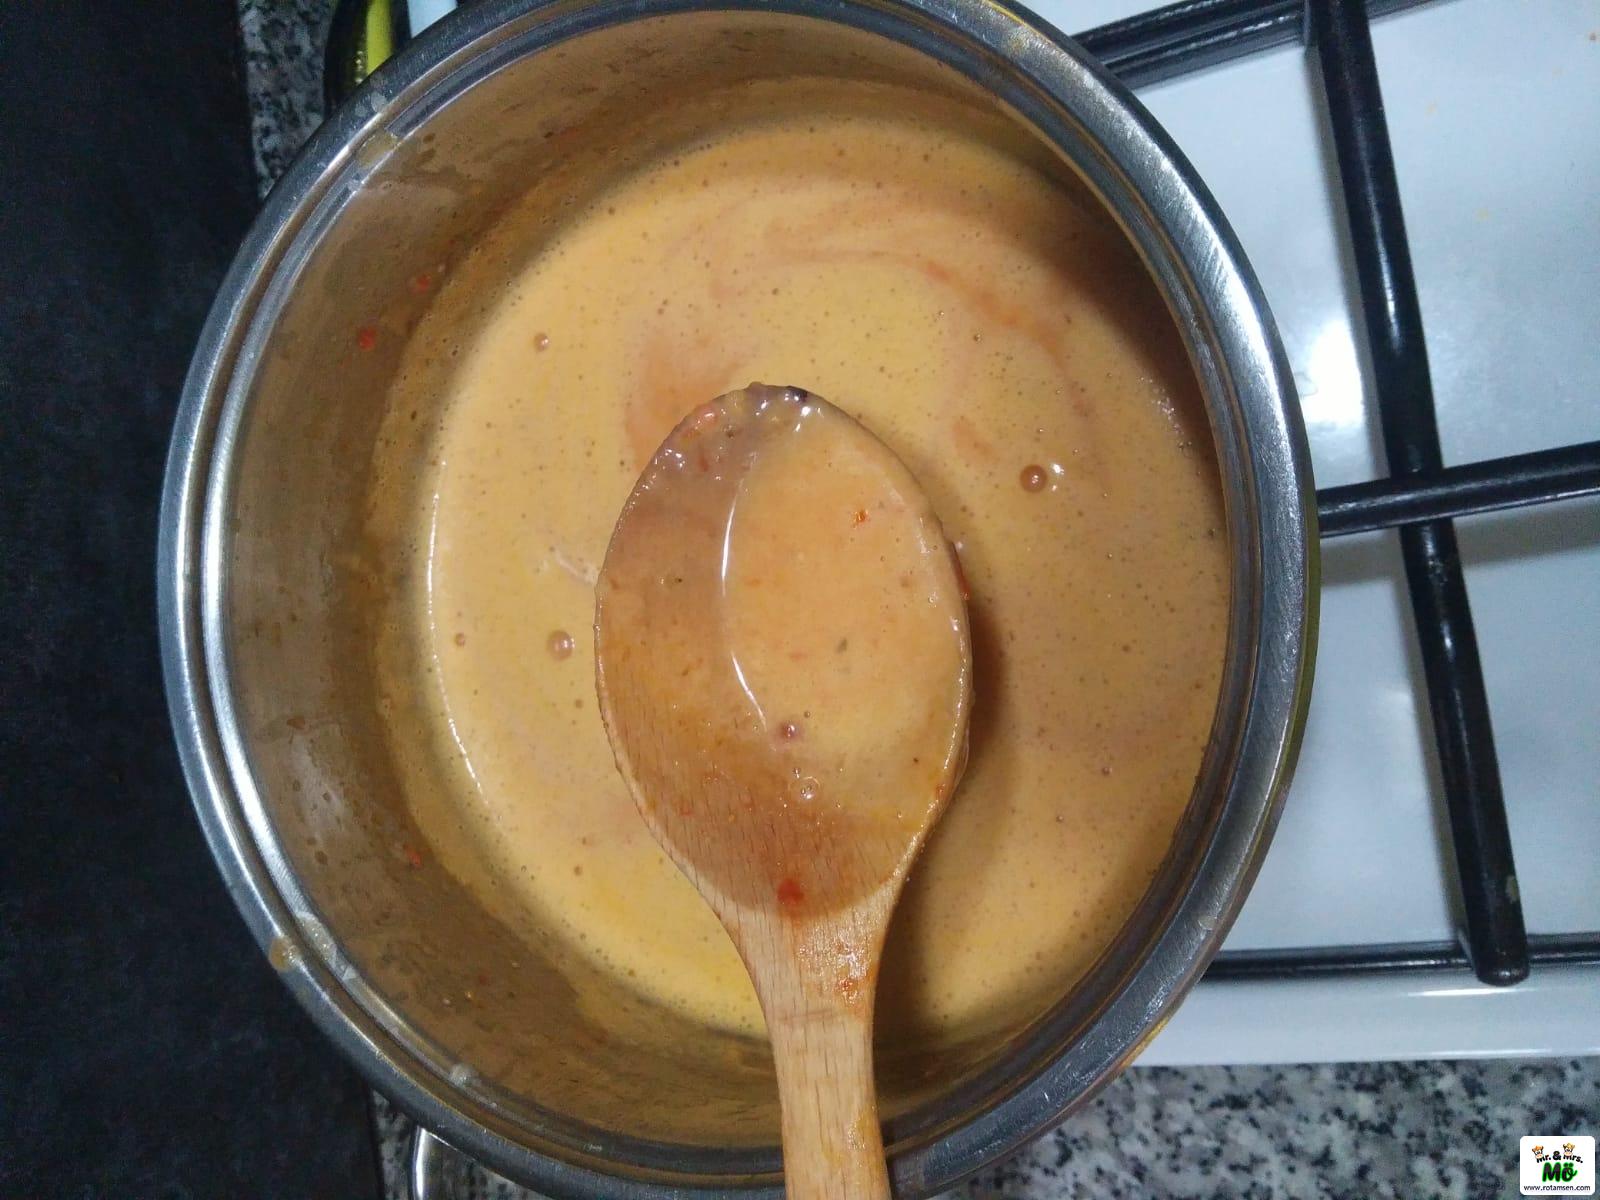 Köz Domates Çorbası 7 – koz domates corbasi 6